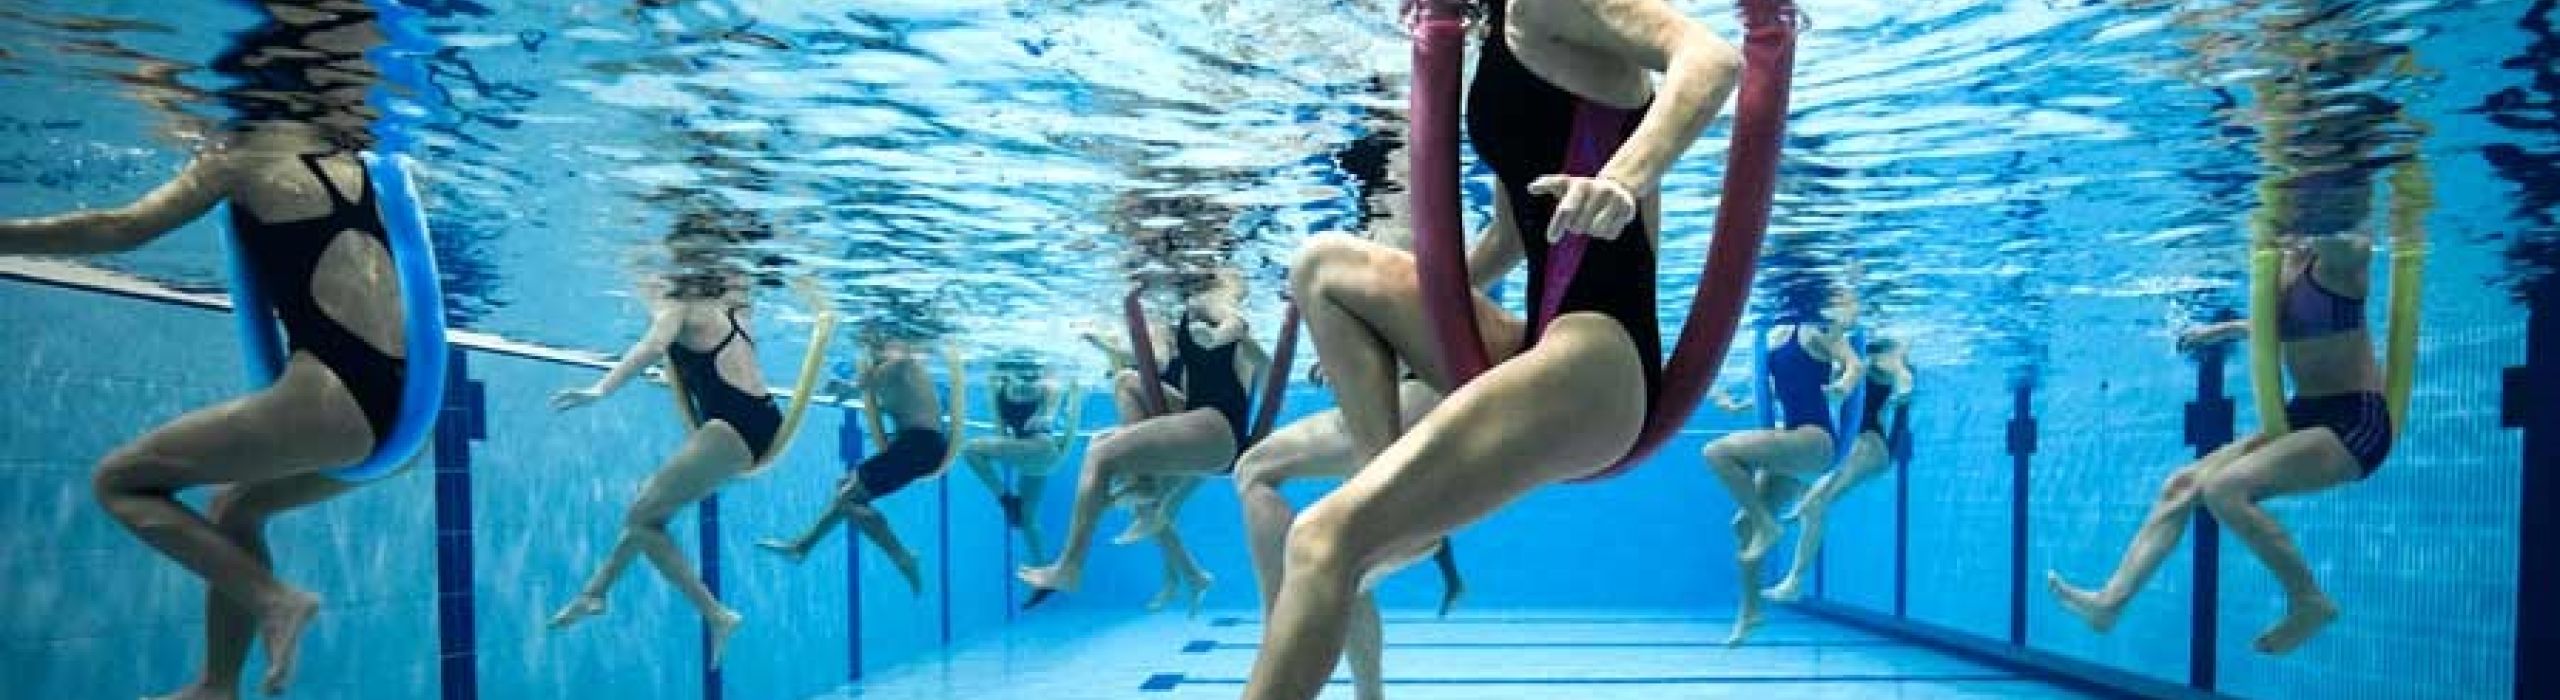 Aquafitness - macht Spass und ist ein Gewinn für Ihre persönliche Fitness